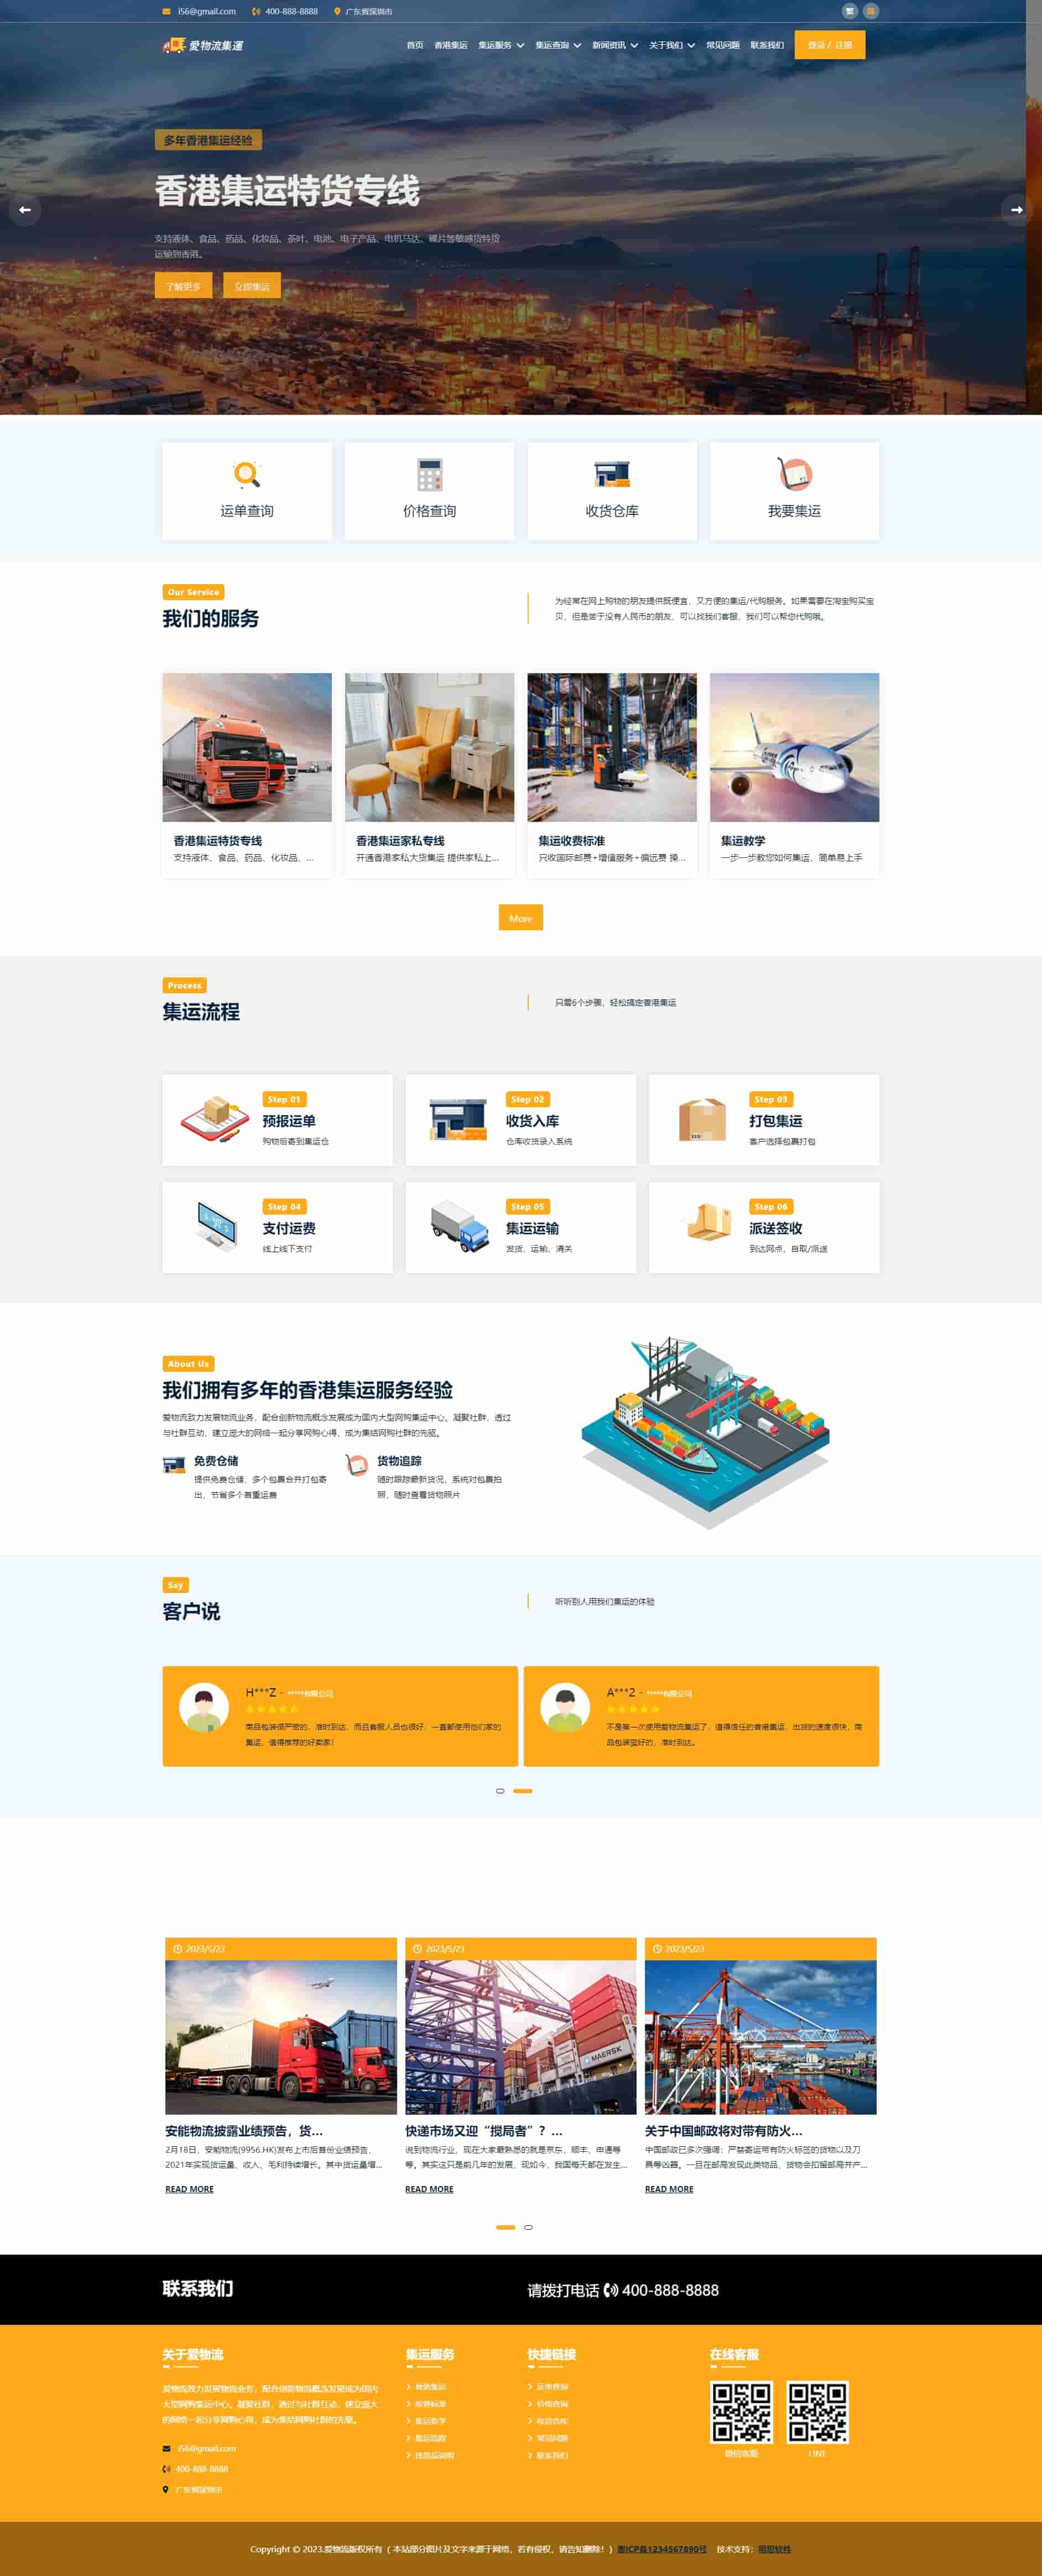 黄色创意设计香港集运模板网站